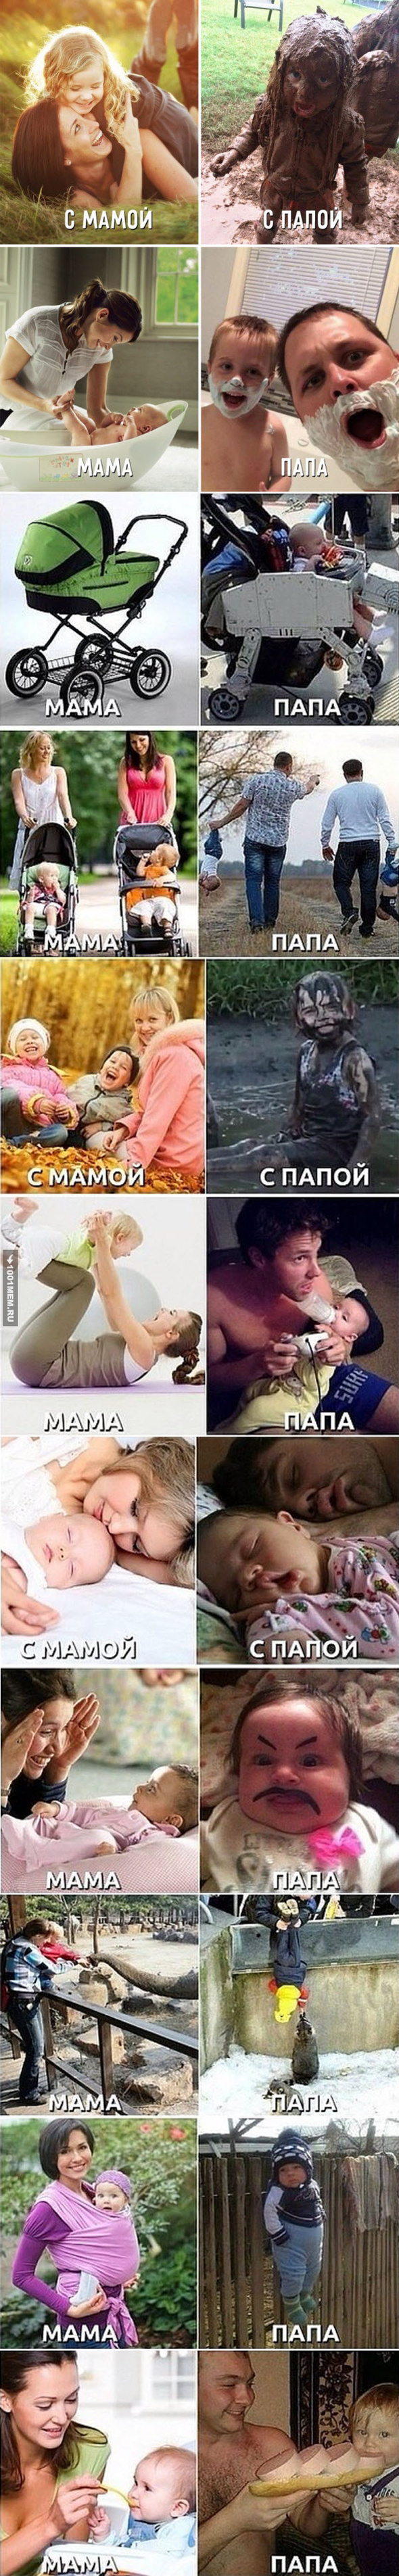 Разница в воспитании детей)